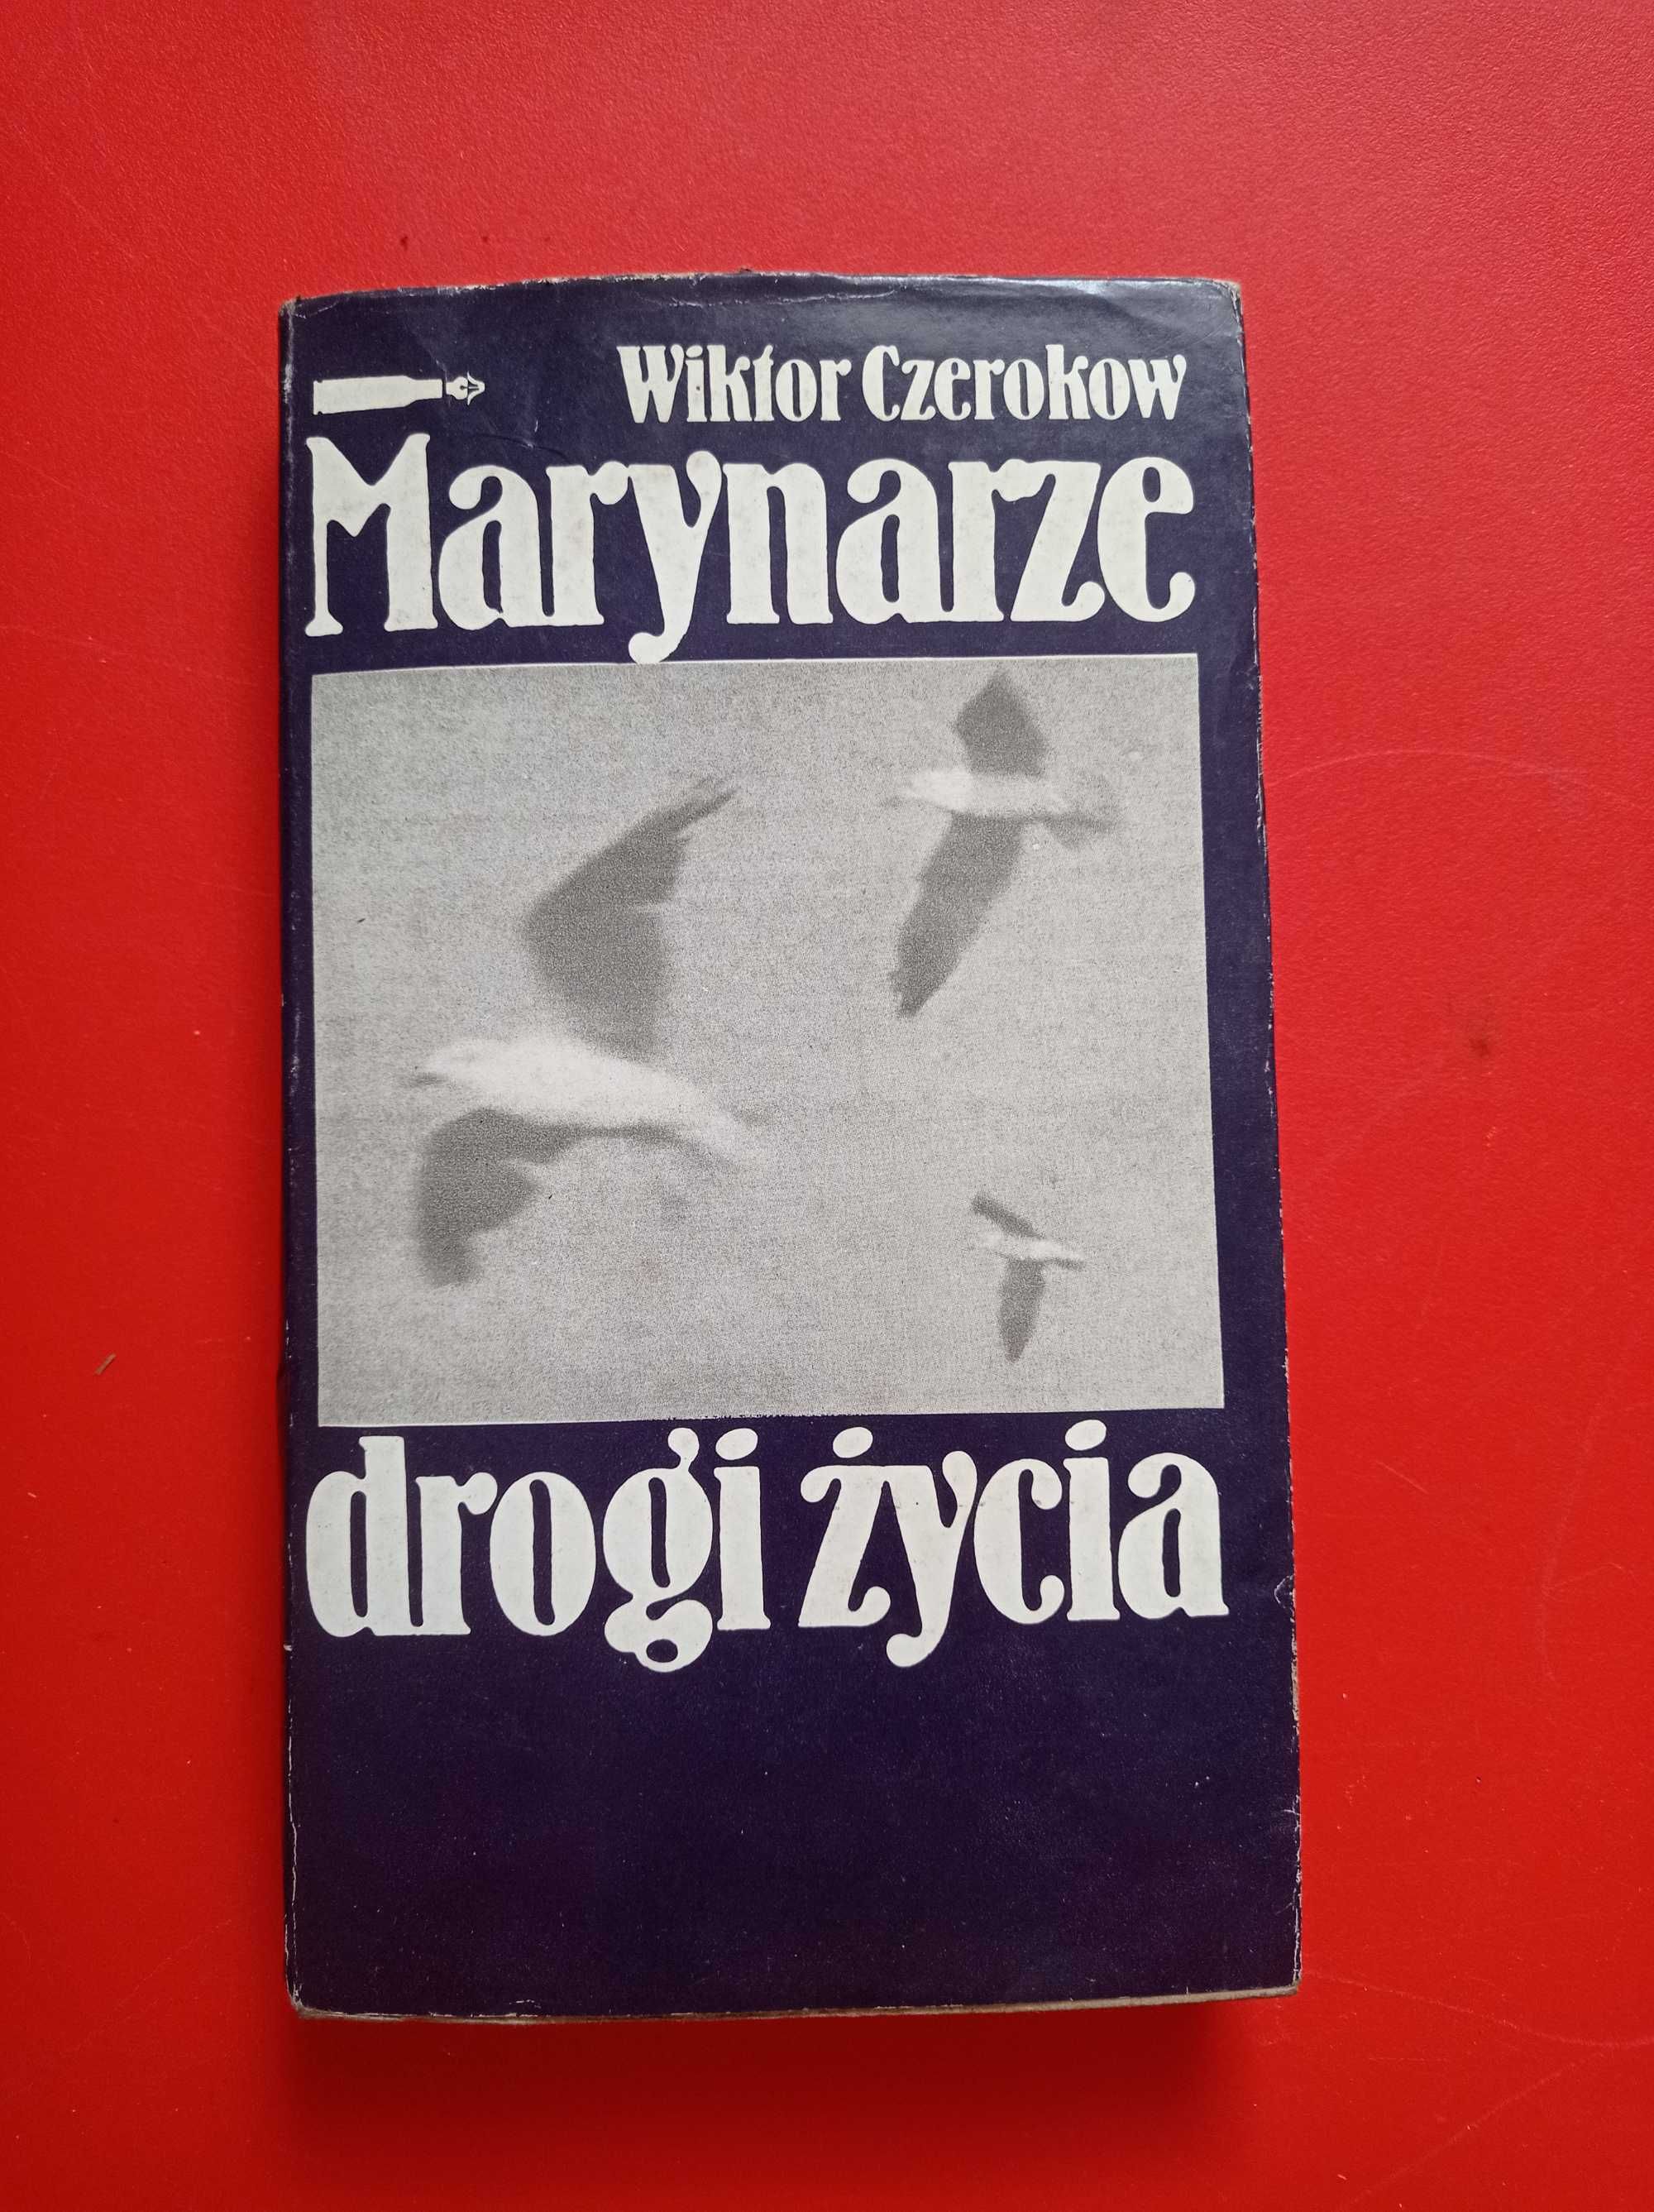 Marynarze drogi życia, Wiktor Czerokow